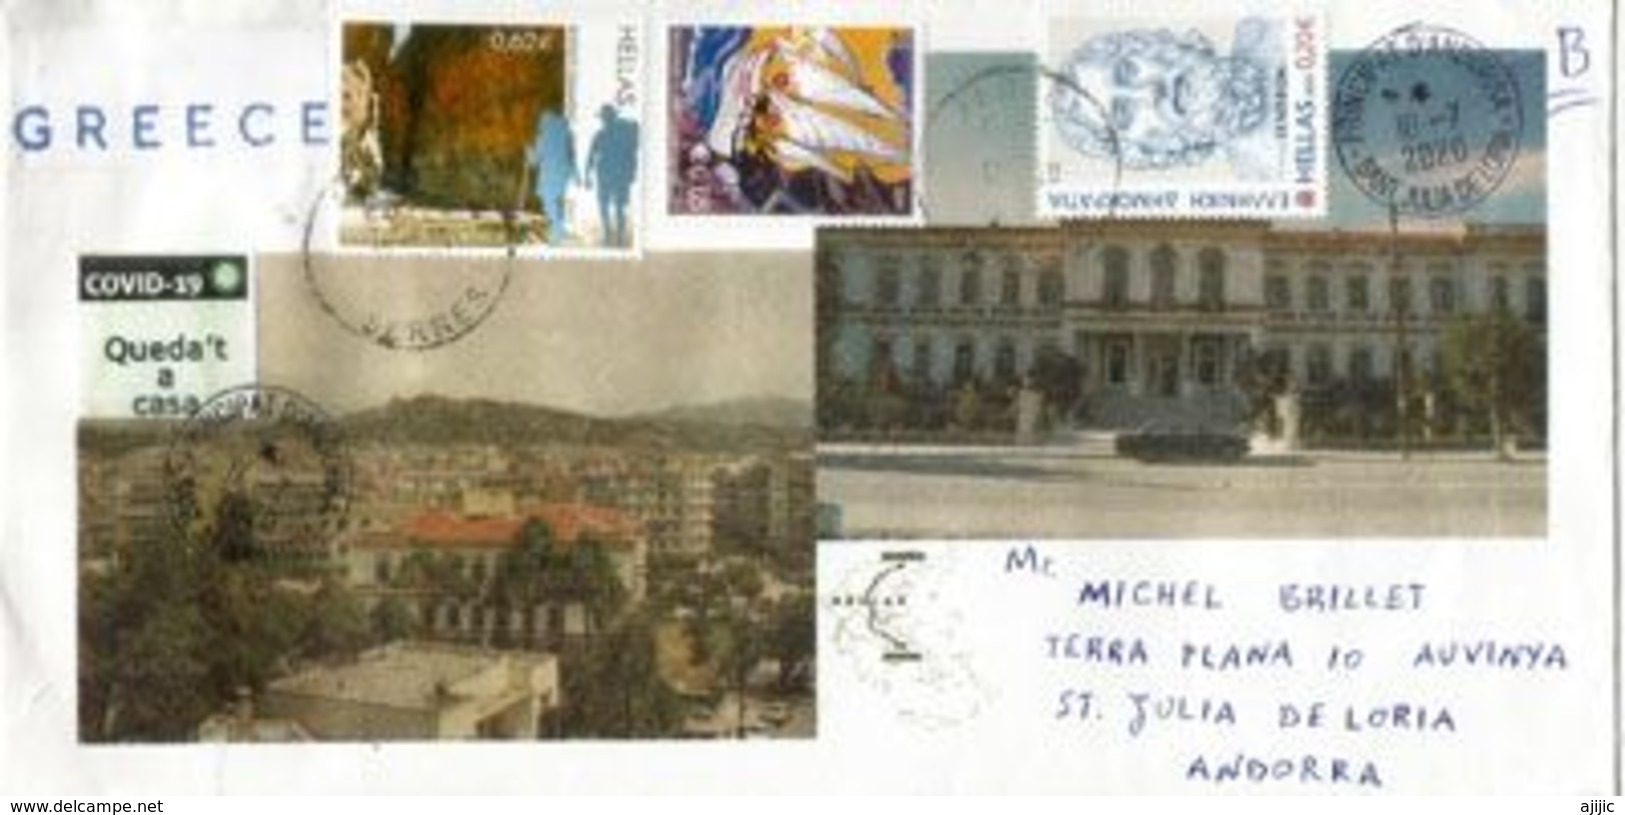 Lettre De Grèce Envoyée Andorra Pendant Le COVID19 Lockdown, Avec Vignette Prévention STAY HOME / QUEDA'T A CASA - Lettres & Documents